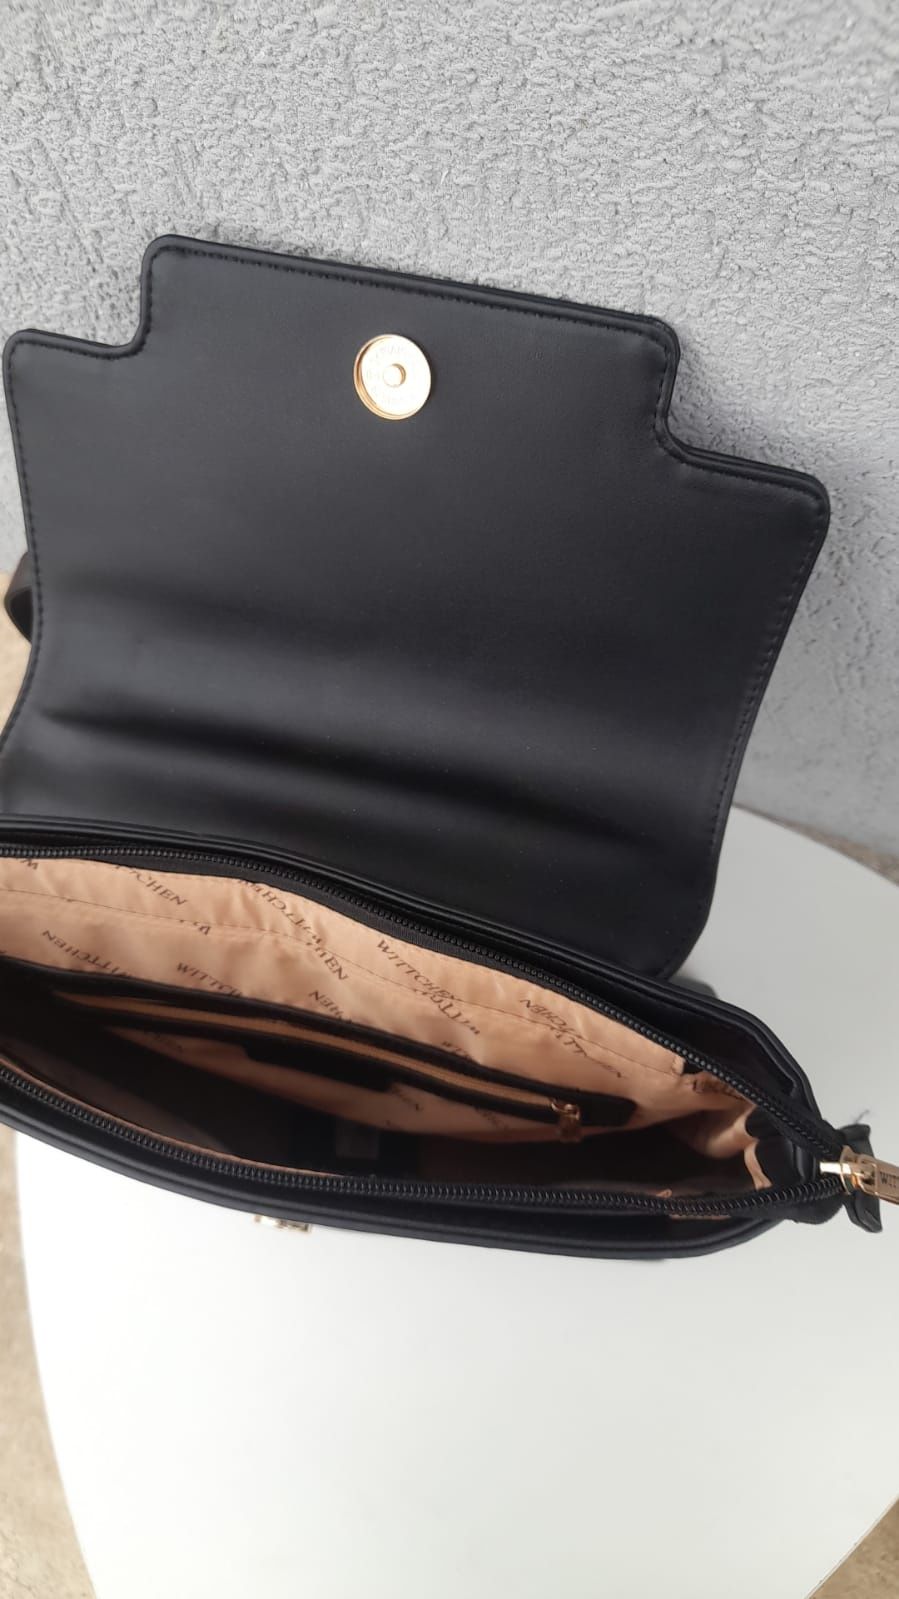 Rucsac negru/geanta încăpătoare, cureluse de umar și mâner, noua;